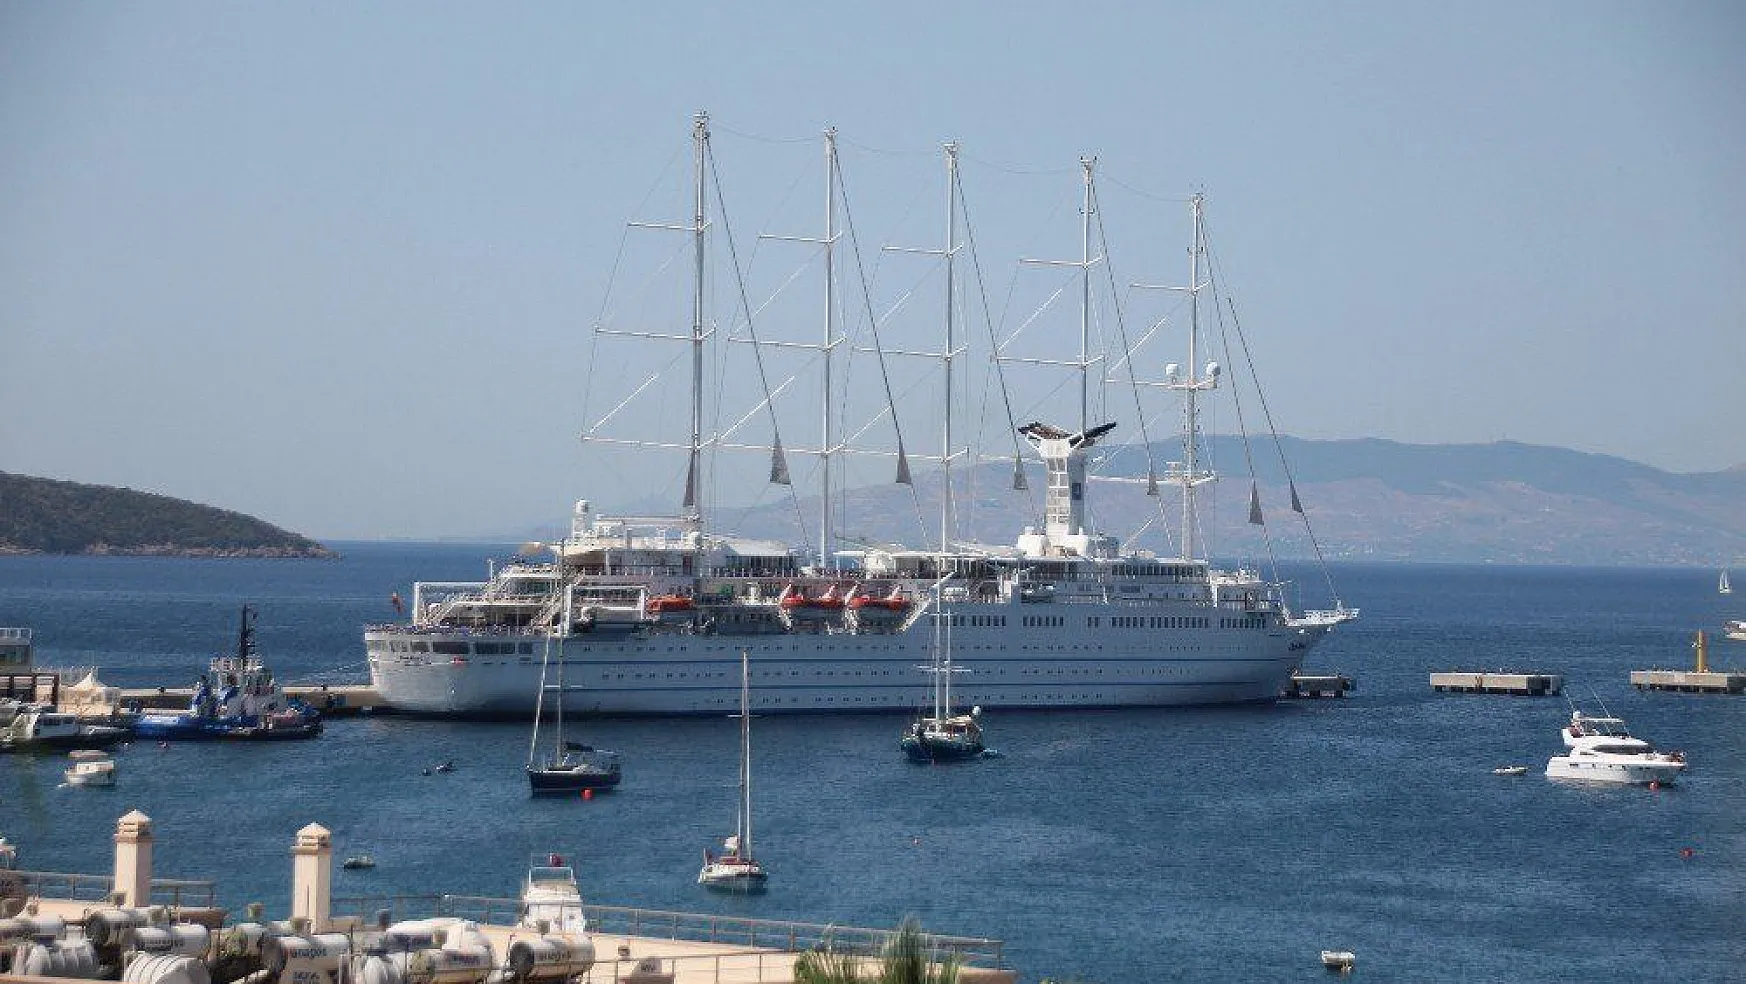 Dünyanın en büyük yelkenli yolcu gemisi Bodrum